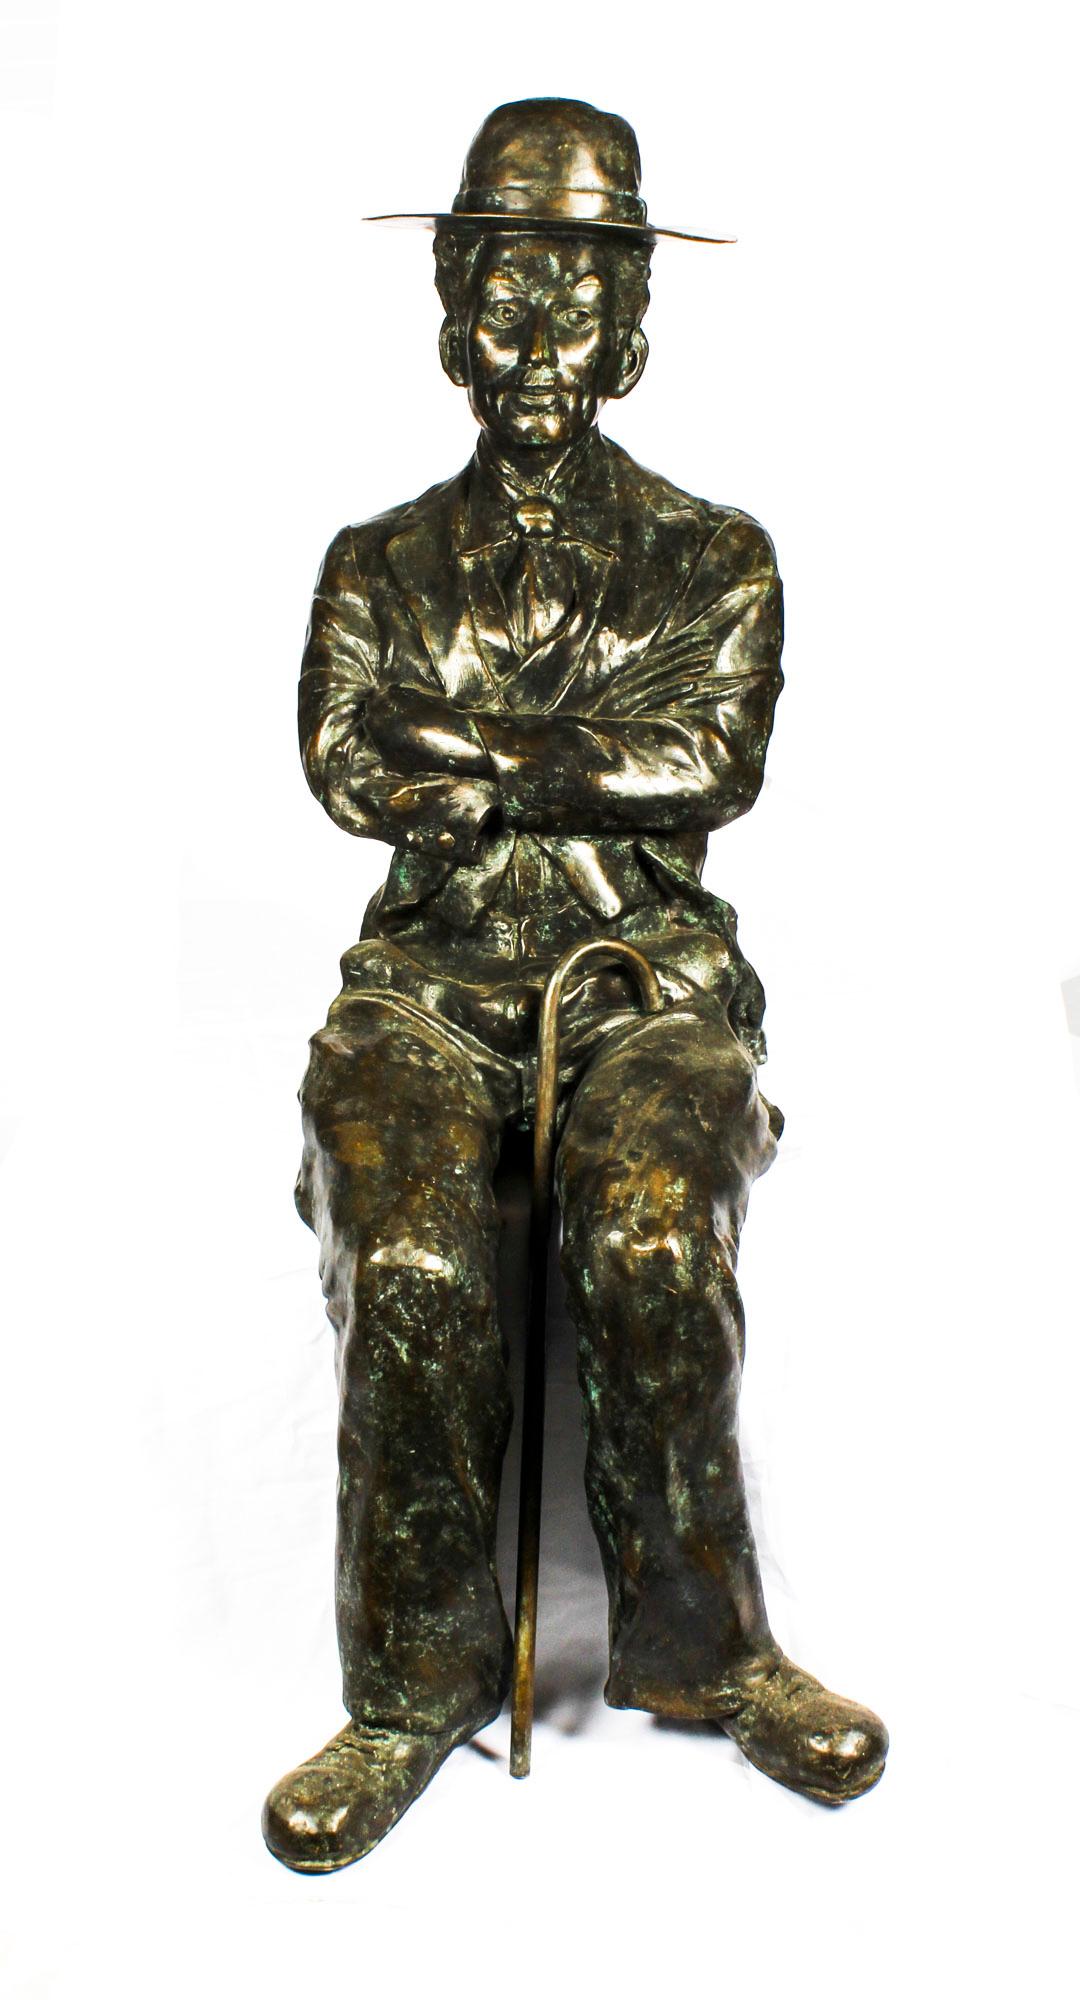 Une superbe sculpture en bronze de Charlie Chaplin assis avec sa canne, datant de la fin du 20e siècle.

L'attention portée aux détails est absolument fantastique et donne vraiment vie à cette pièce. Il ne vous reste plus qu'à ajouter le siège, le